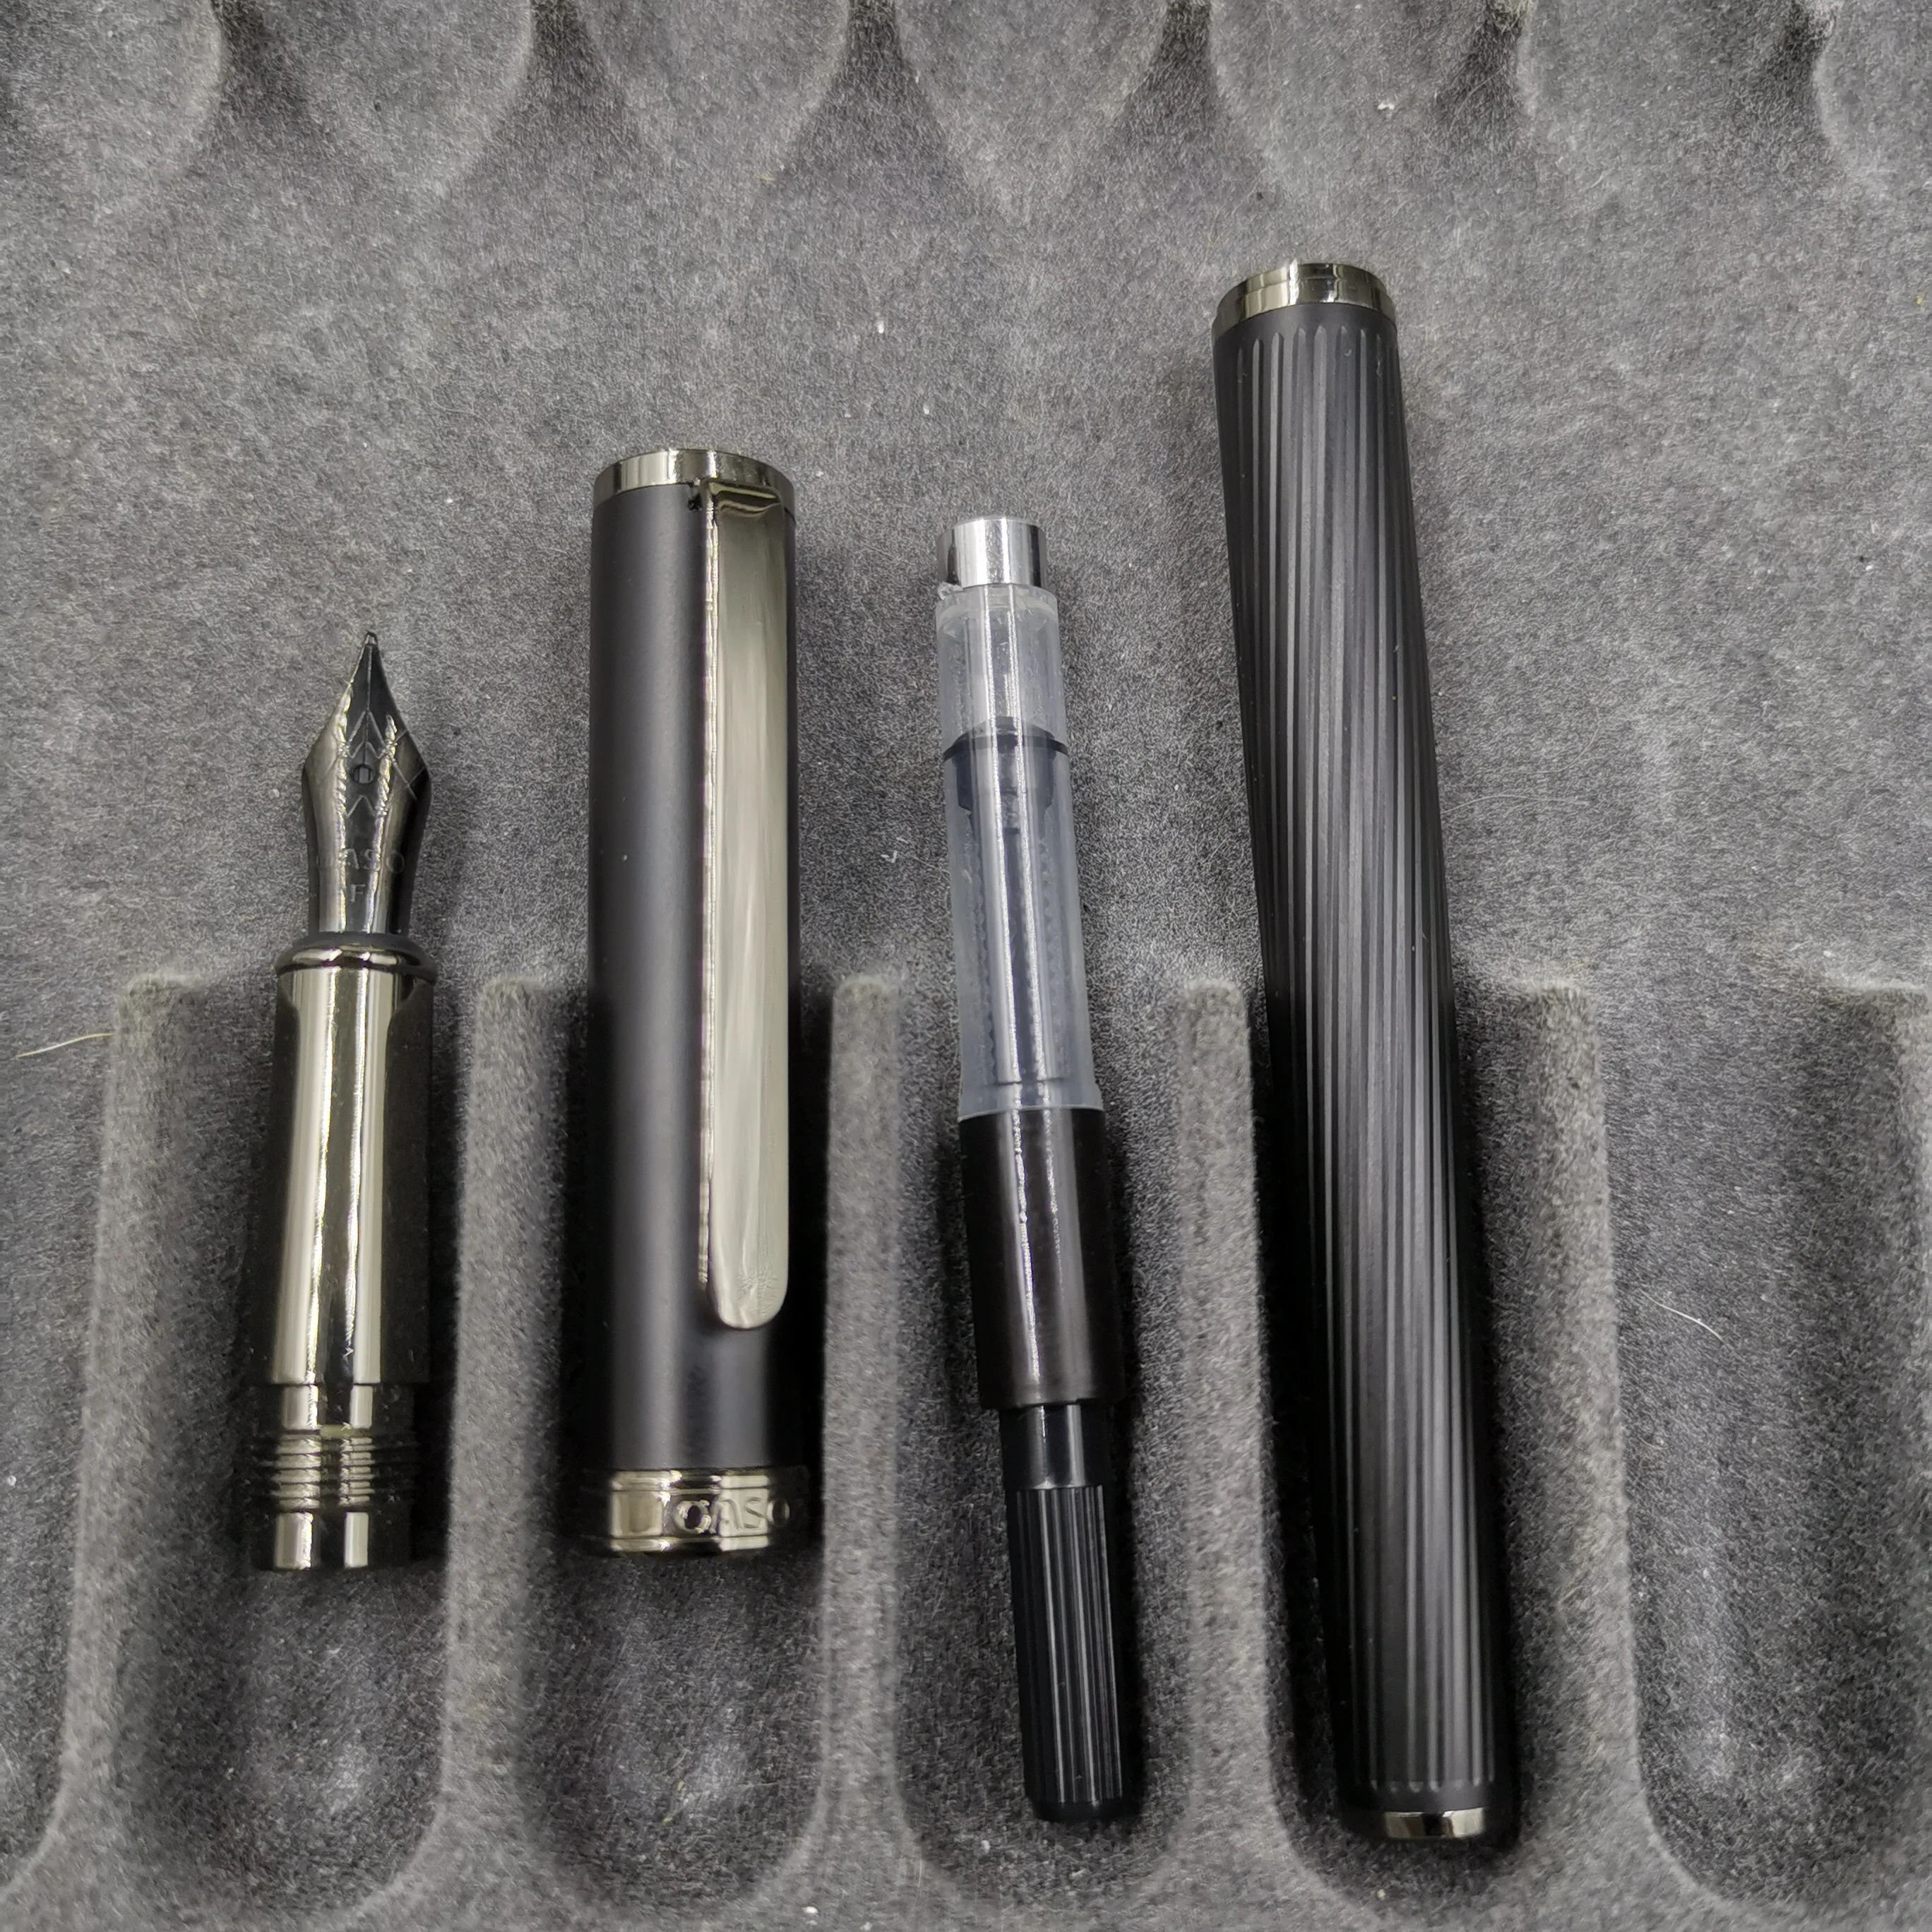 OS перьевая ручка с F черным пером конвертера ручка, канцелярские принадлежности для офиса школьные принадлежности